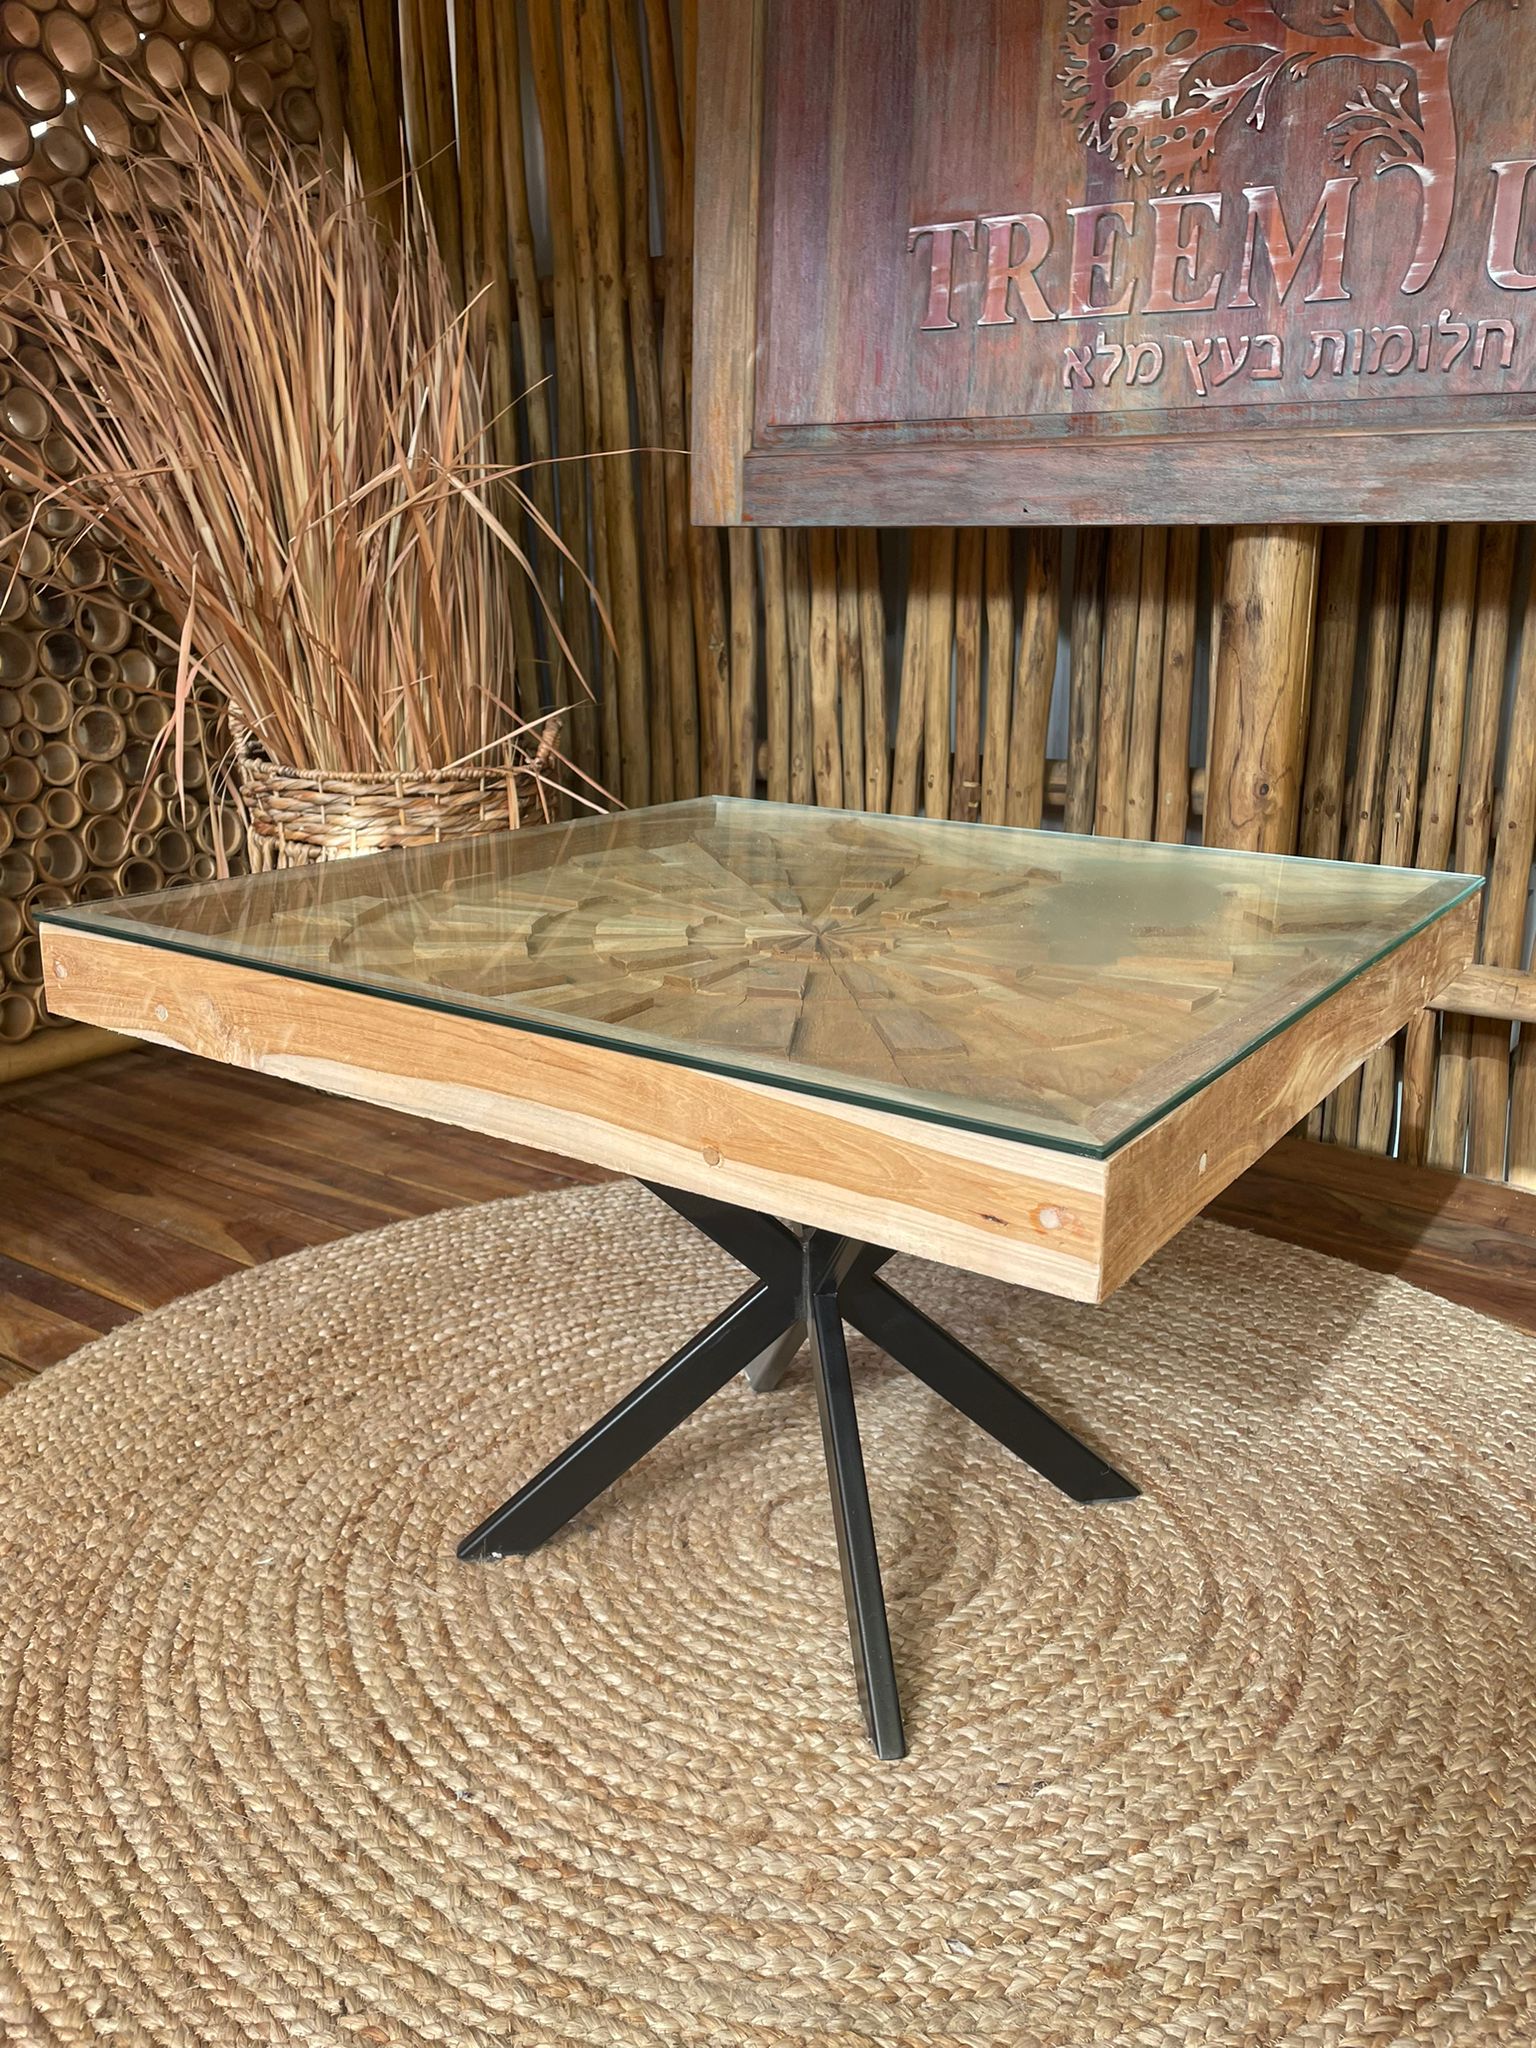 שולחן סלוני עץ מלא מידה 45*70*70 רגל ברזל שחור משולב תמונה דקורטיבית וזכוכית במחיר מבצע: 2,200 ש"ח